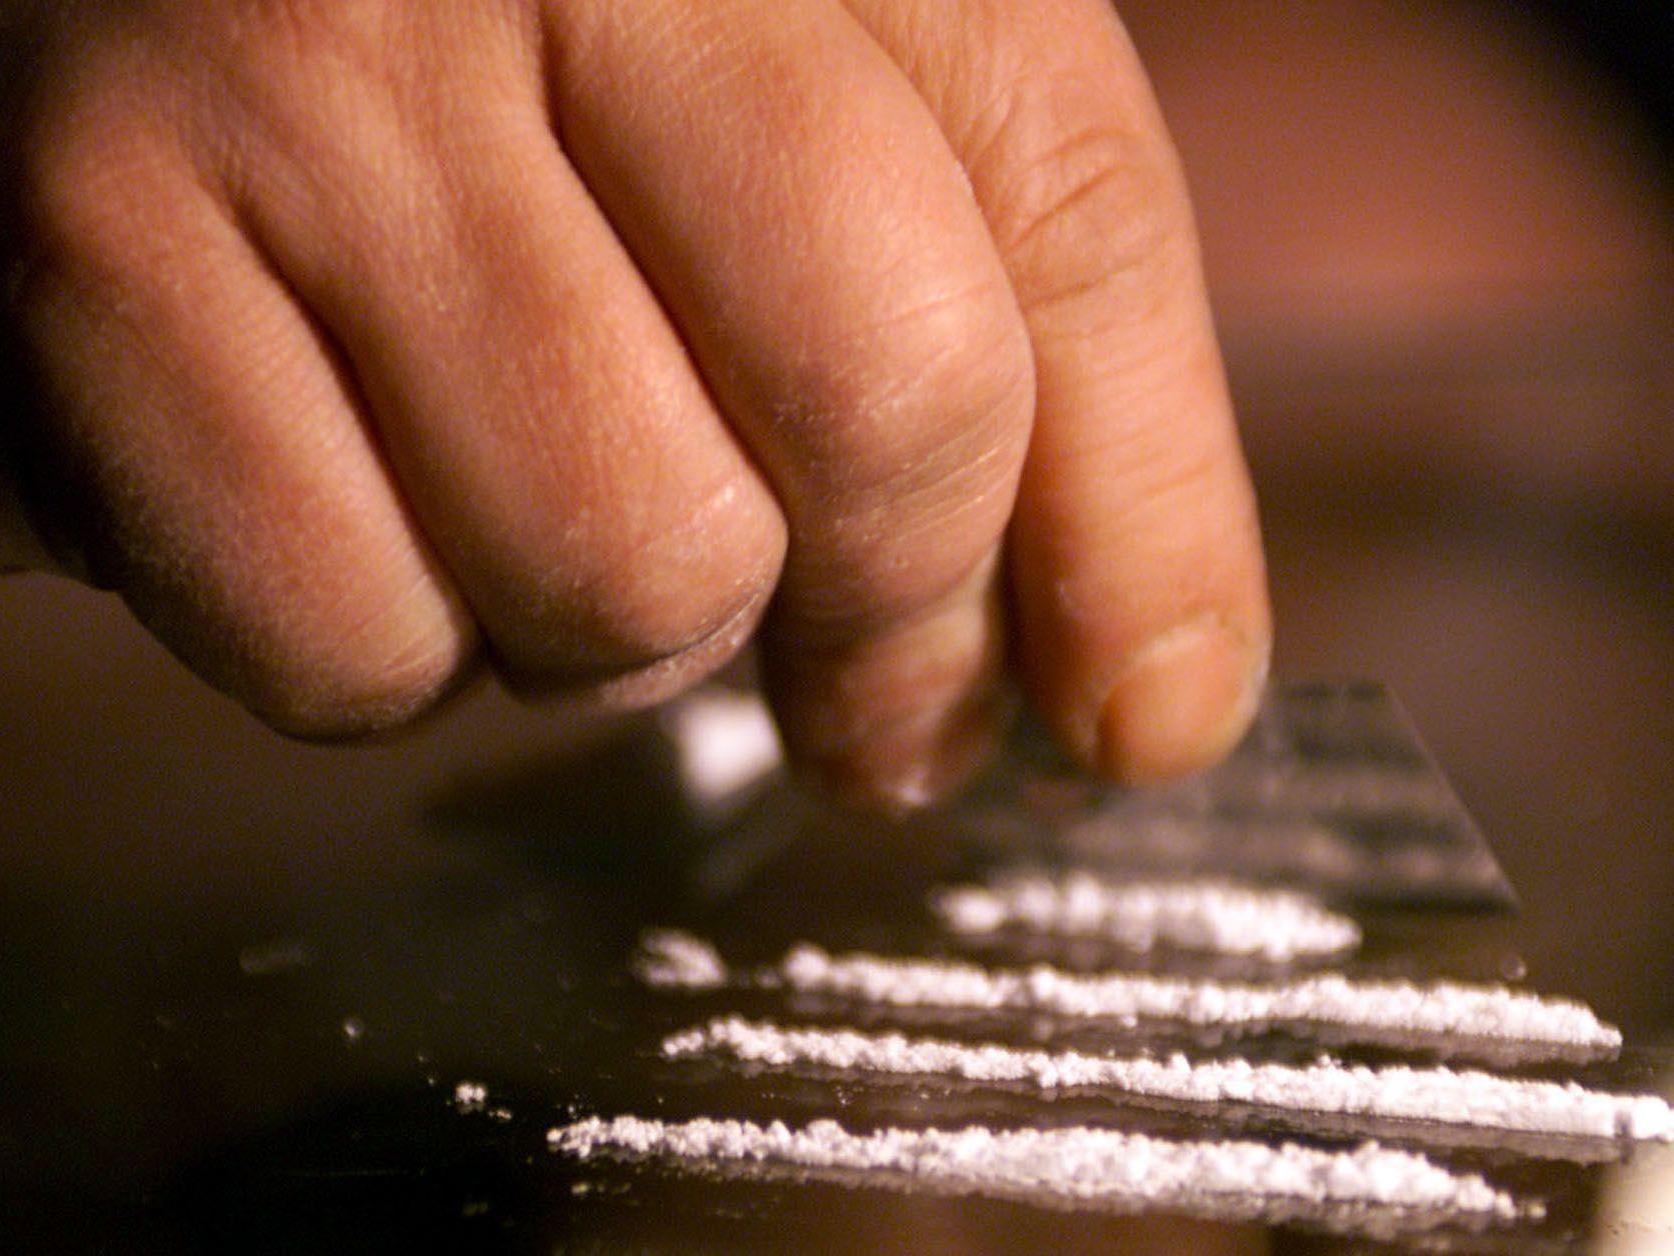 Verurteilt wurde der 72-Jährige auch für die kostenlose Weitergabe von 30 Gramm Kokain an eine 23-Jährige.